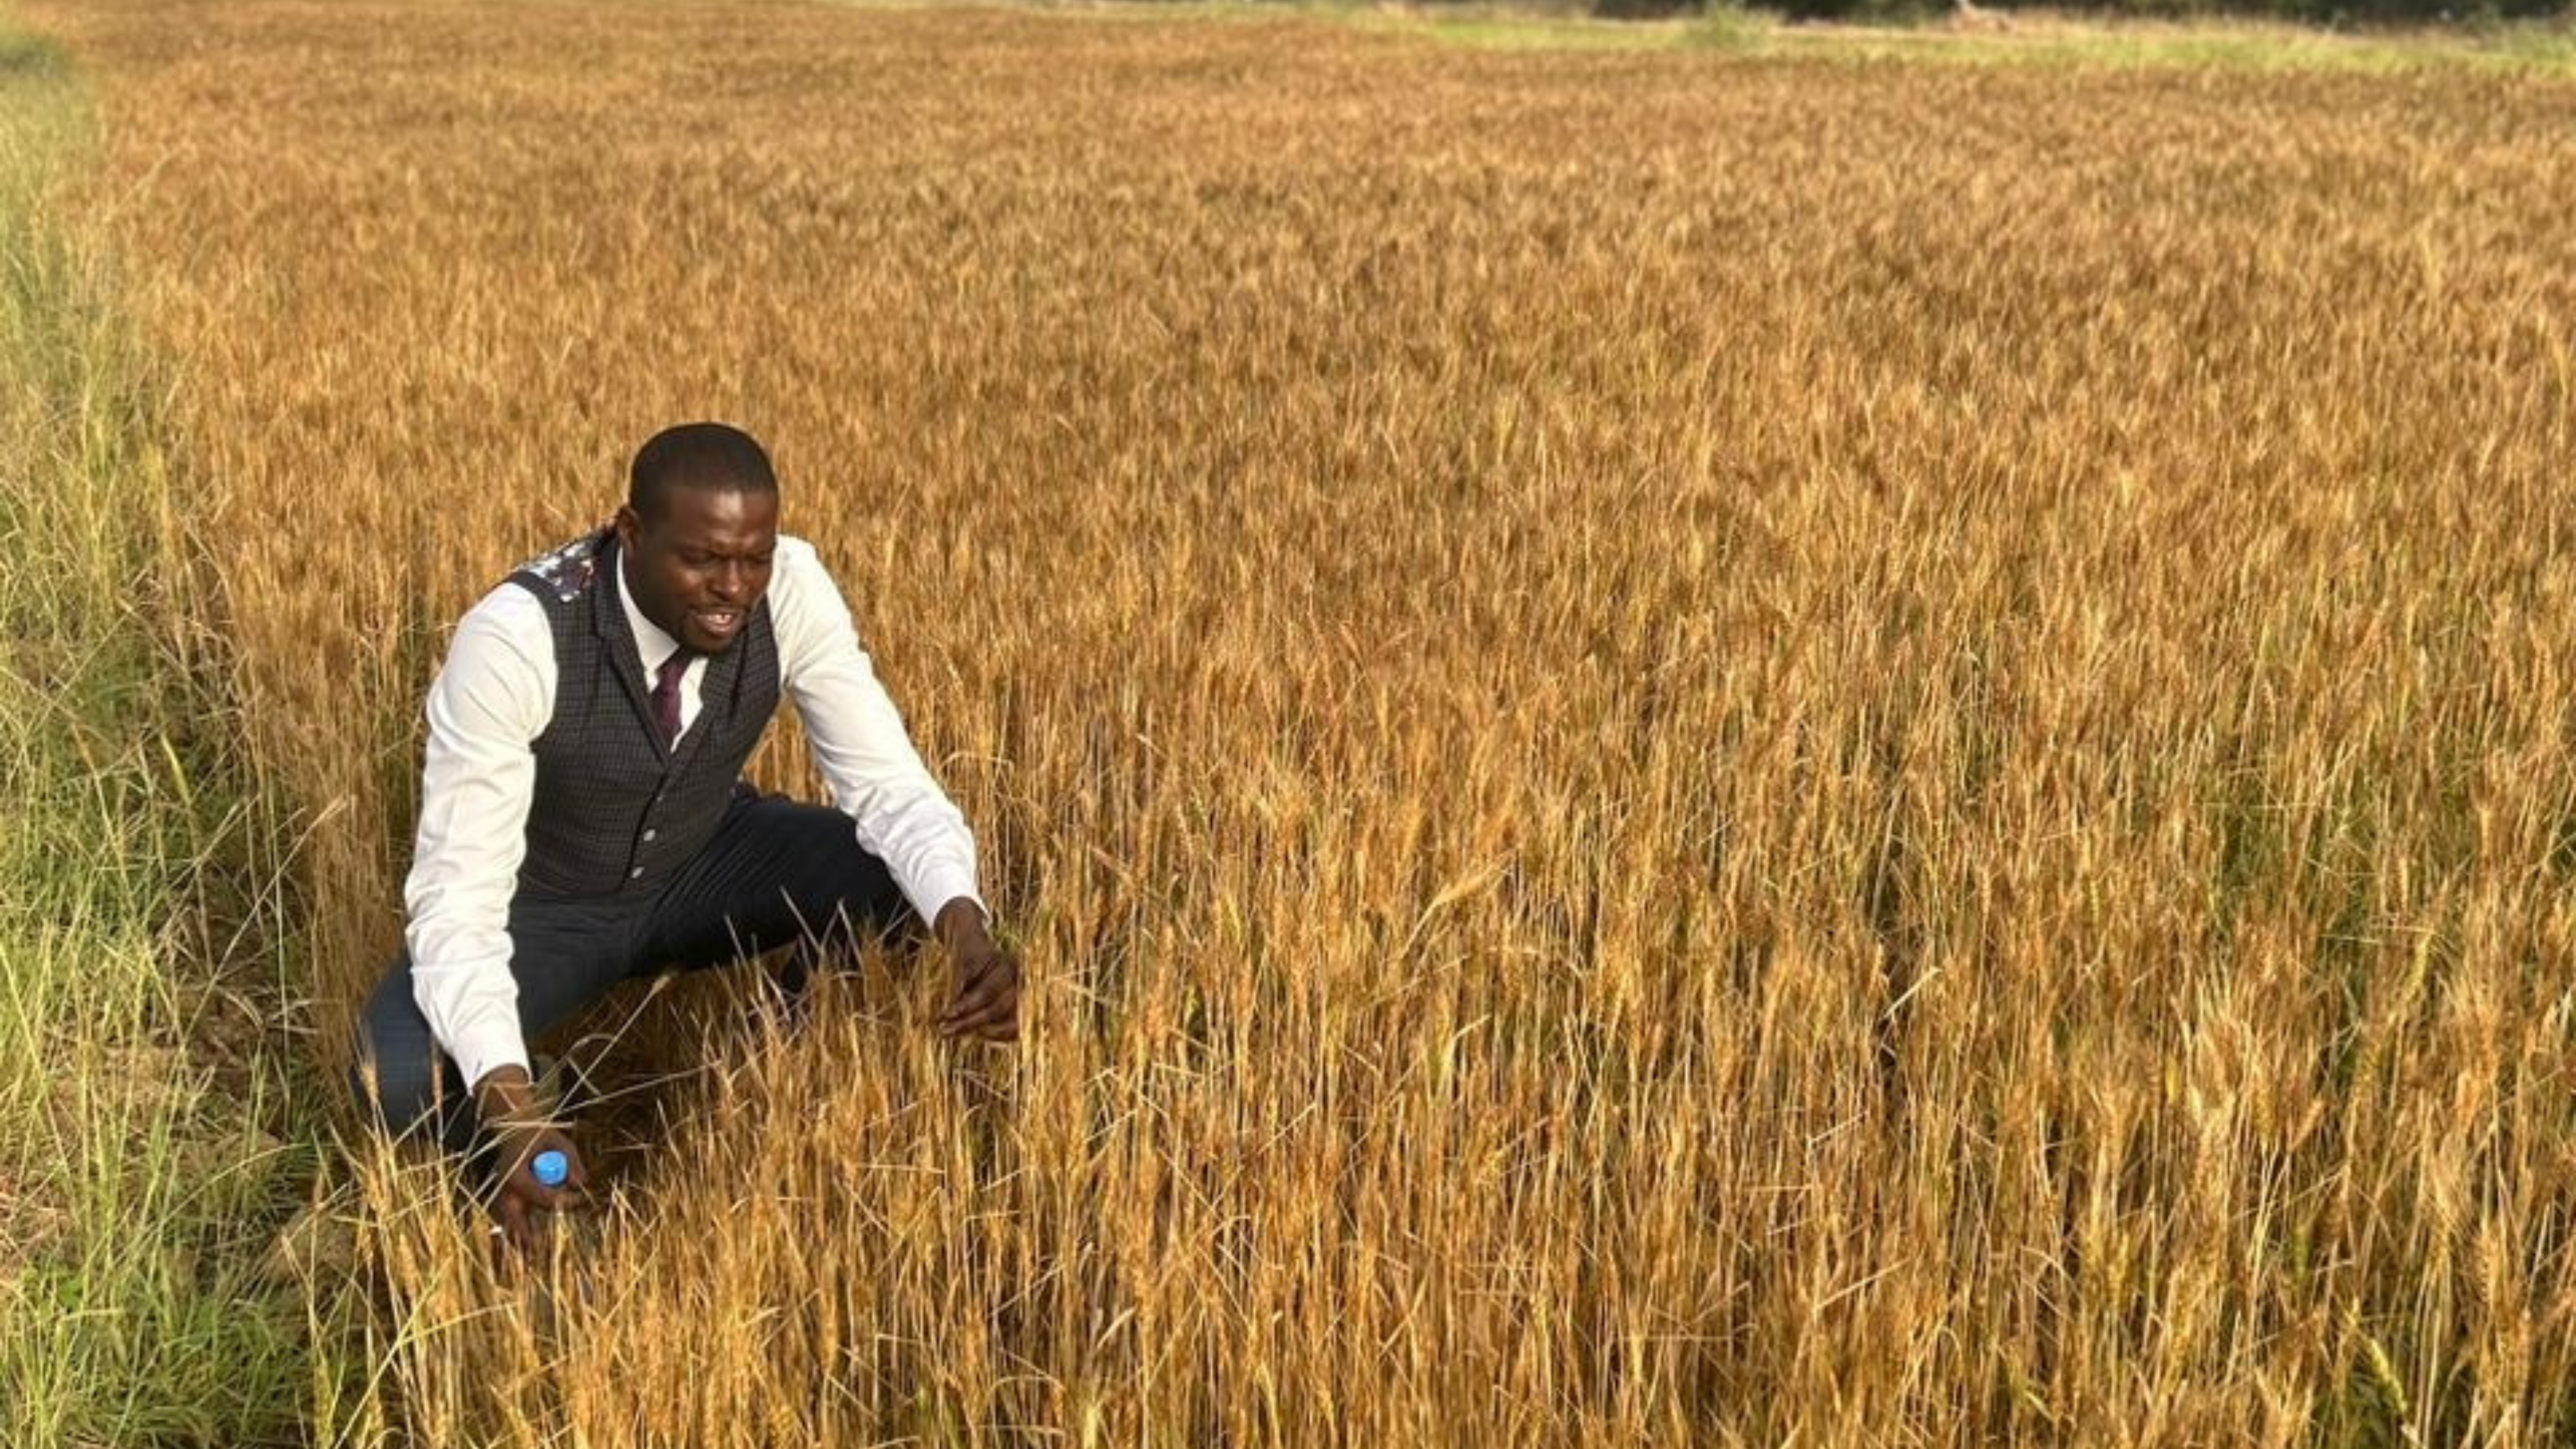 man in a vest kneeling in wheat field